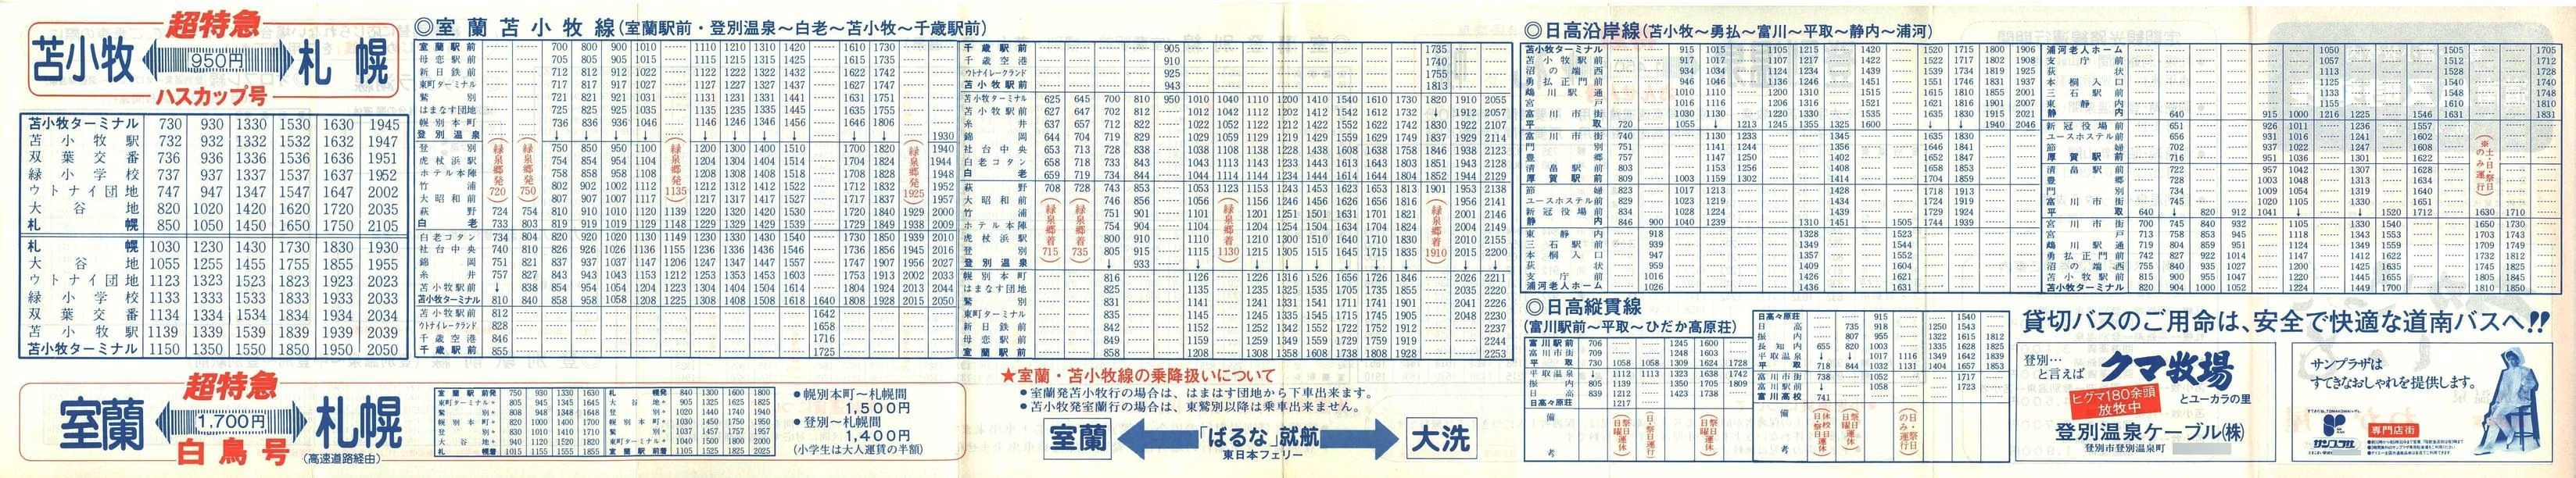 1985-04-01改正_道南バス_登別・苫小牧管内時刻表裏面